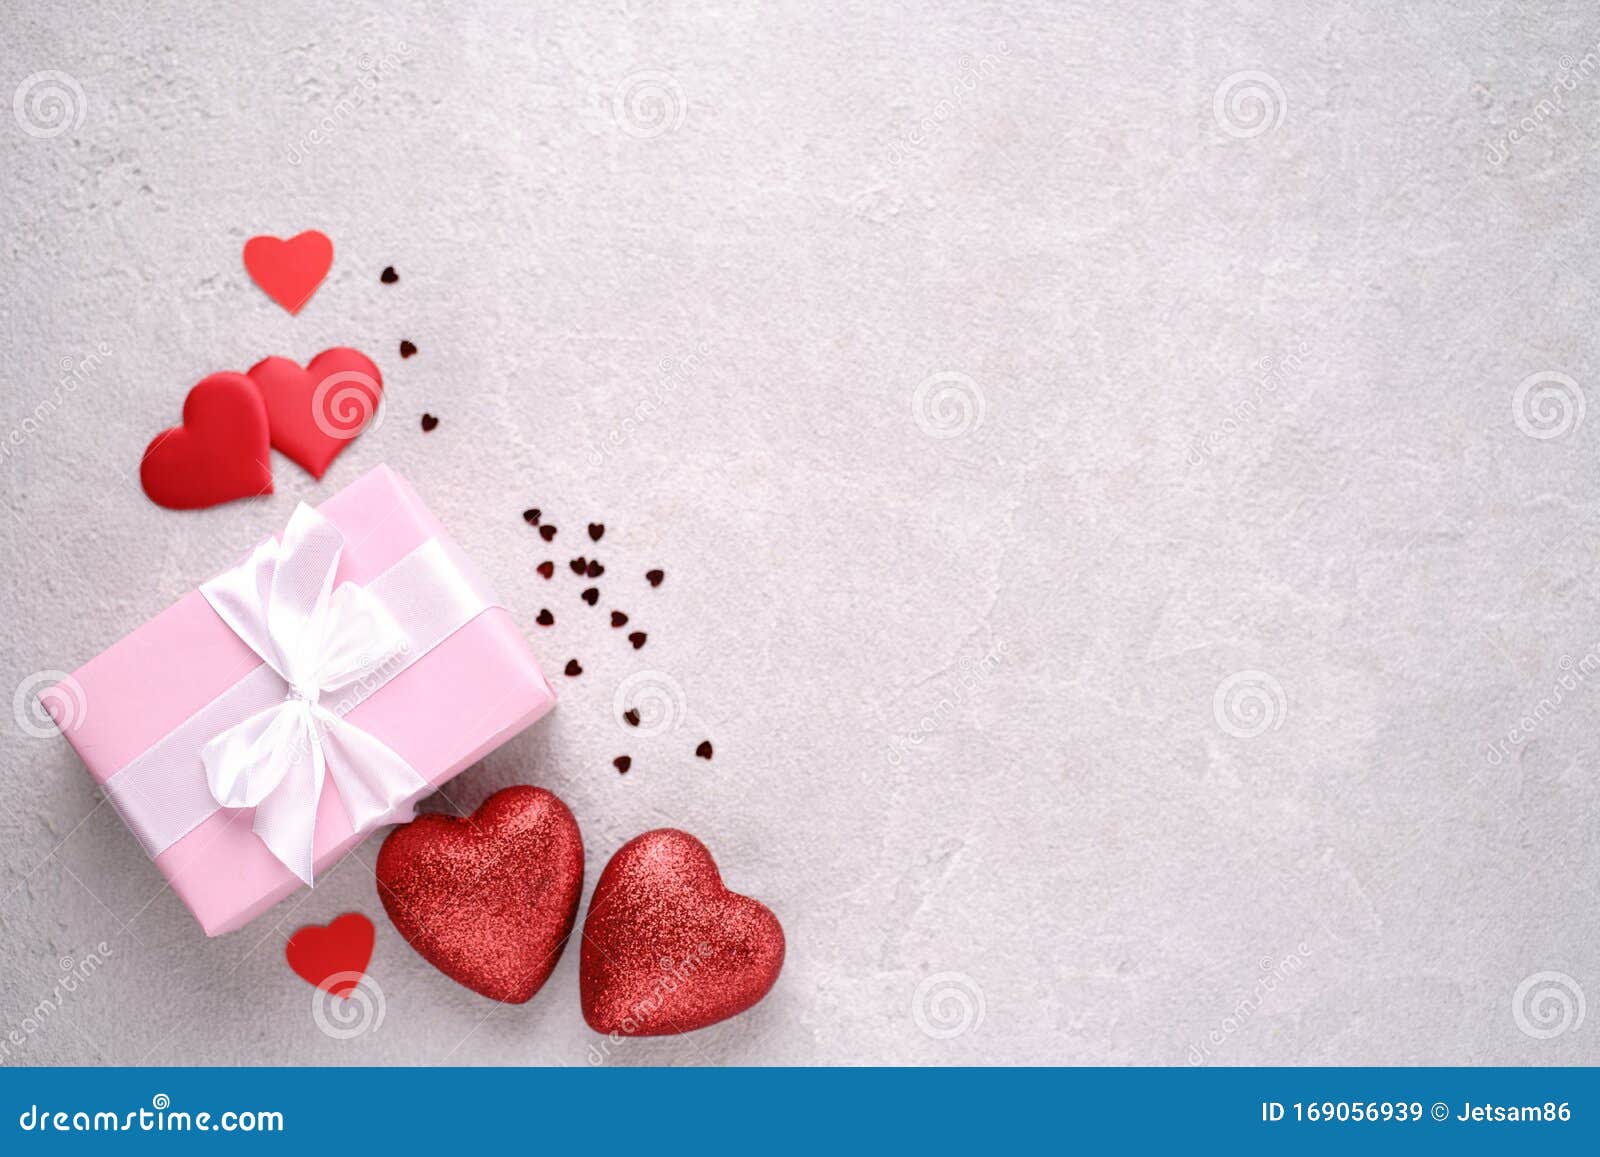 Composición De Fondo De San Valentín Imagen de archivo - Imagen de fondo,  rosa: 169056939